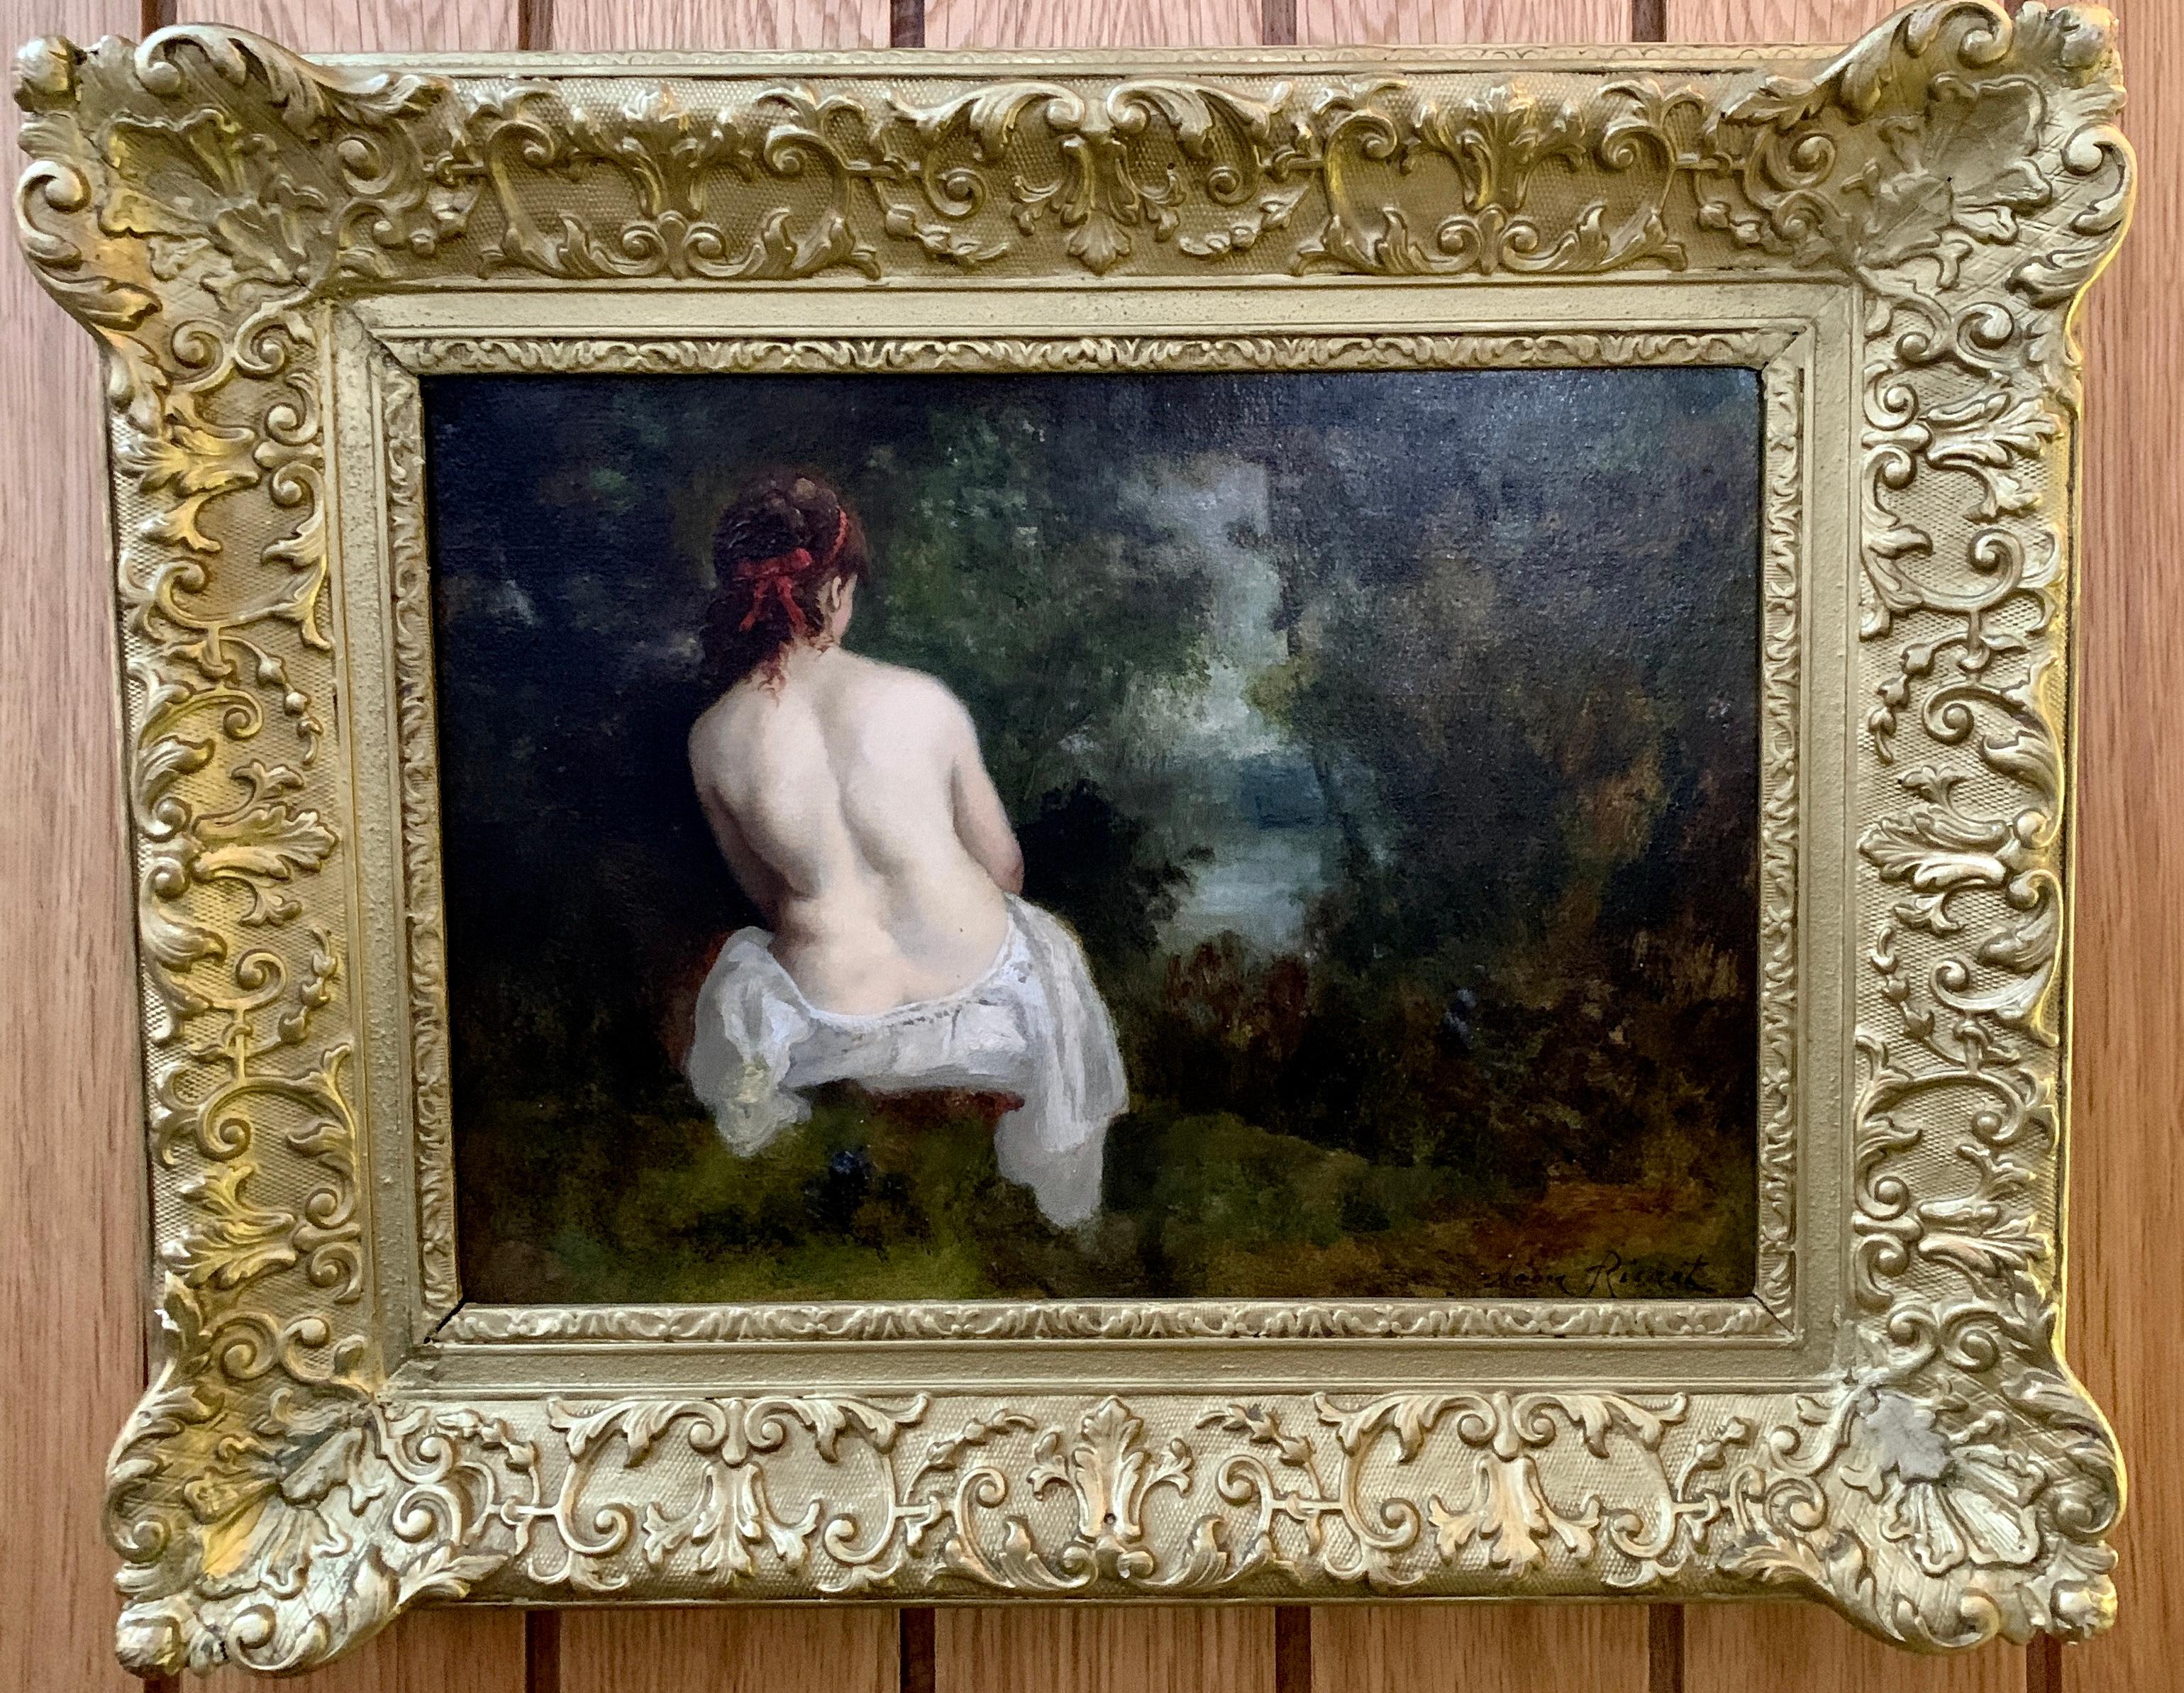 Leon Richet Nude Painting – Französischer Akt einer Dame aus dem 19. Jahrhundert in der Waldlandschaft von Barbizon.